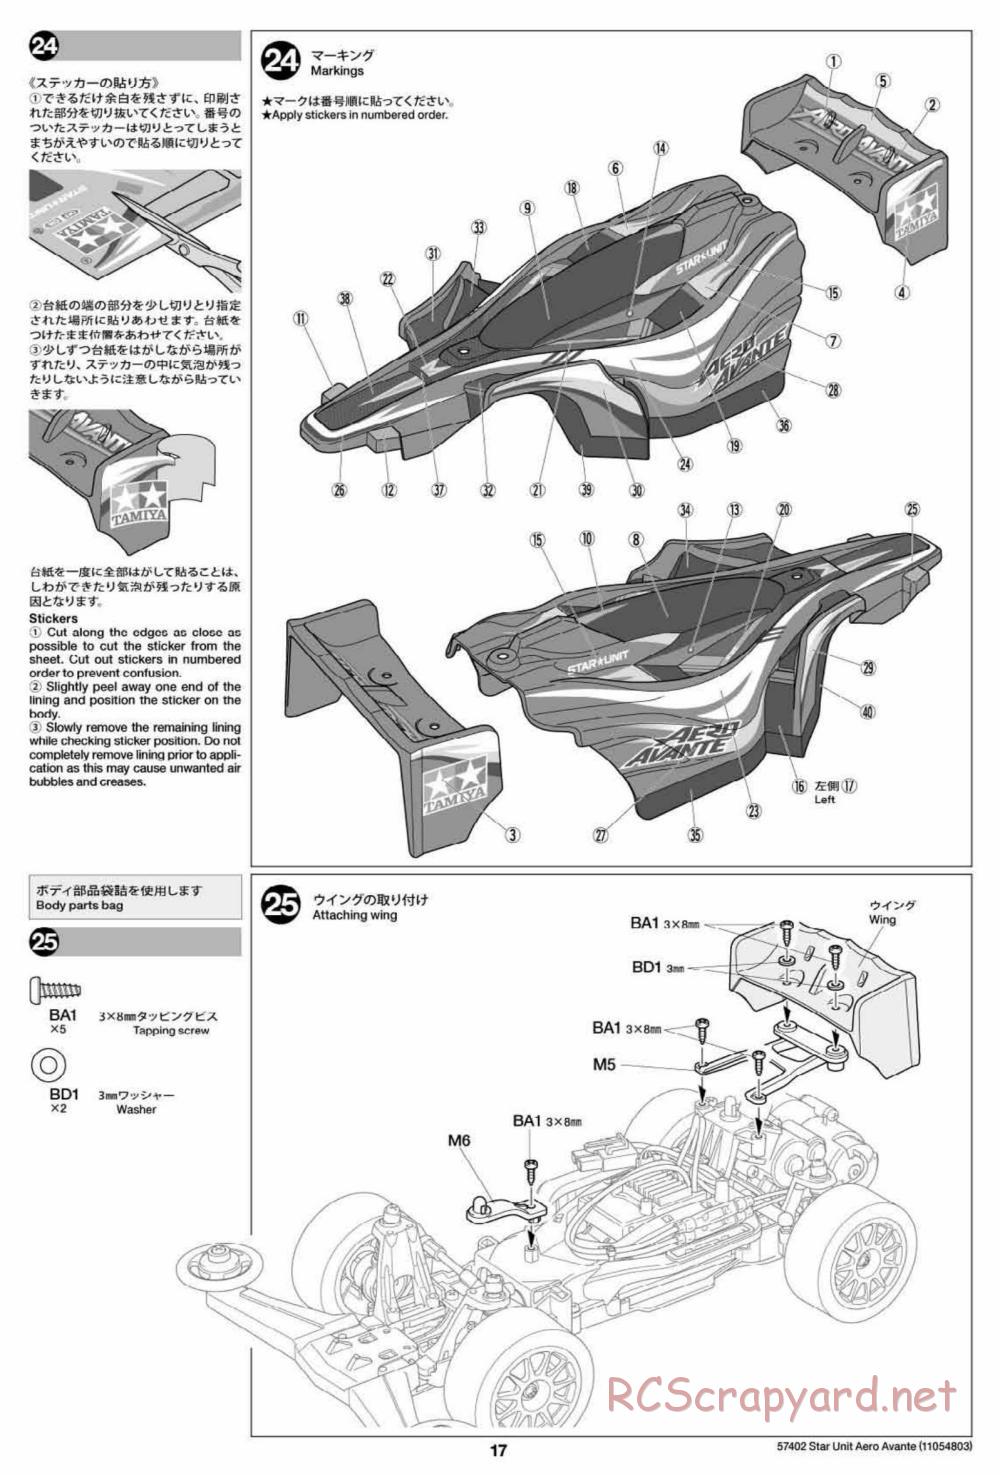 Tamiya - Aero Avante Chassis - Manual - Page 17